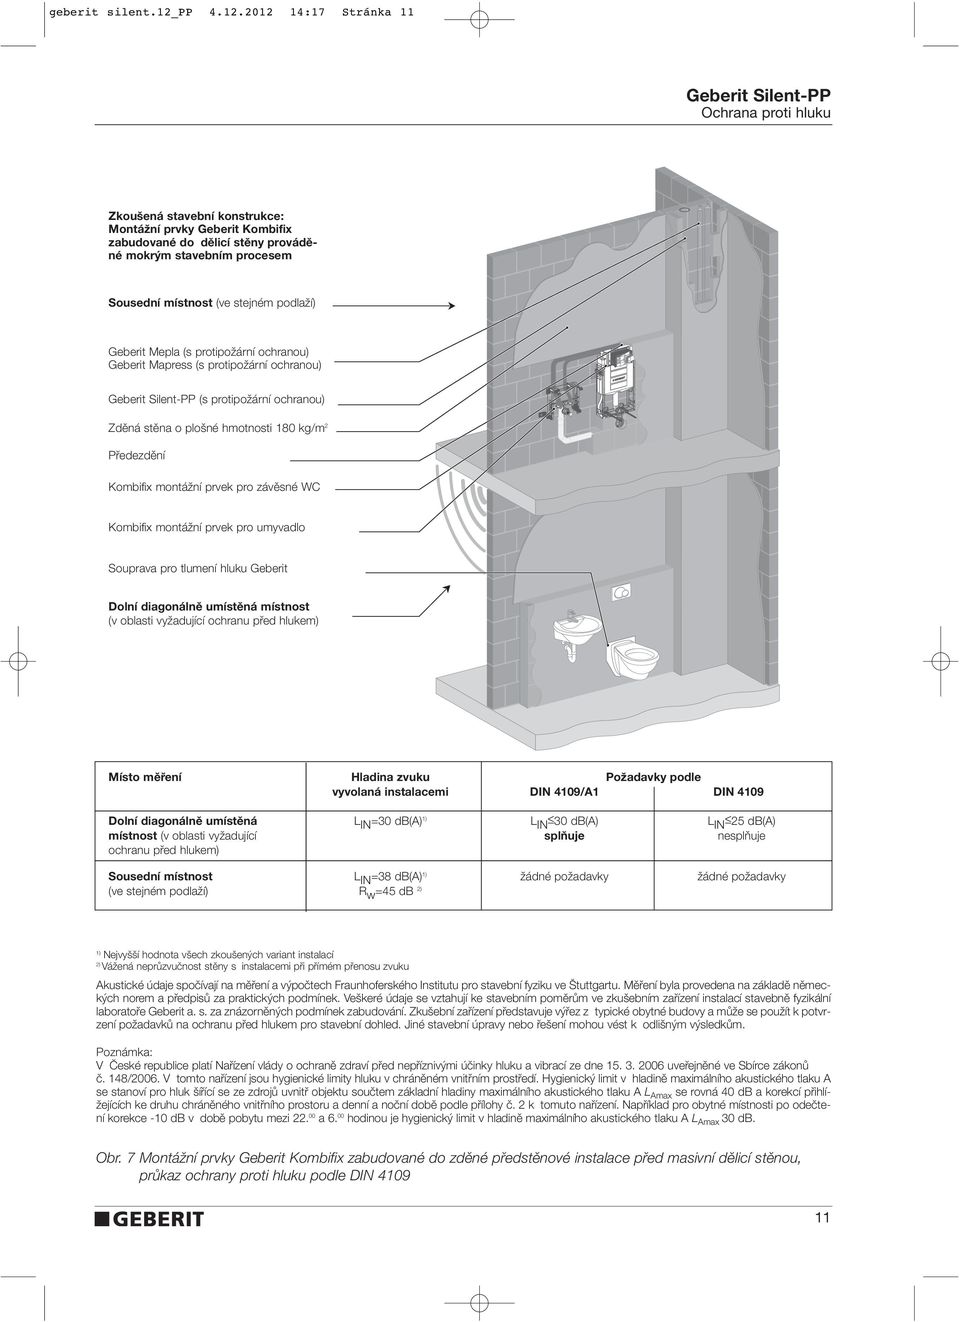 2012 14:17 Stránka 11 Ochrana proti hluku Zkoušená stavební konstrukce: Montážní prvky Geberit Kombifix zabudované do dělicí stěny prováděné mokrým stavebním procesem Sousední místnost (ve stejném